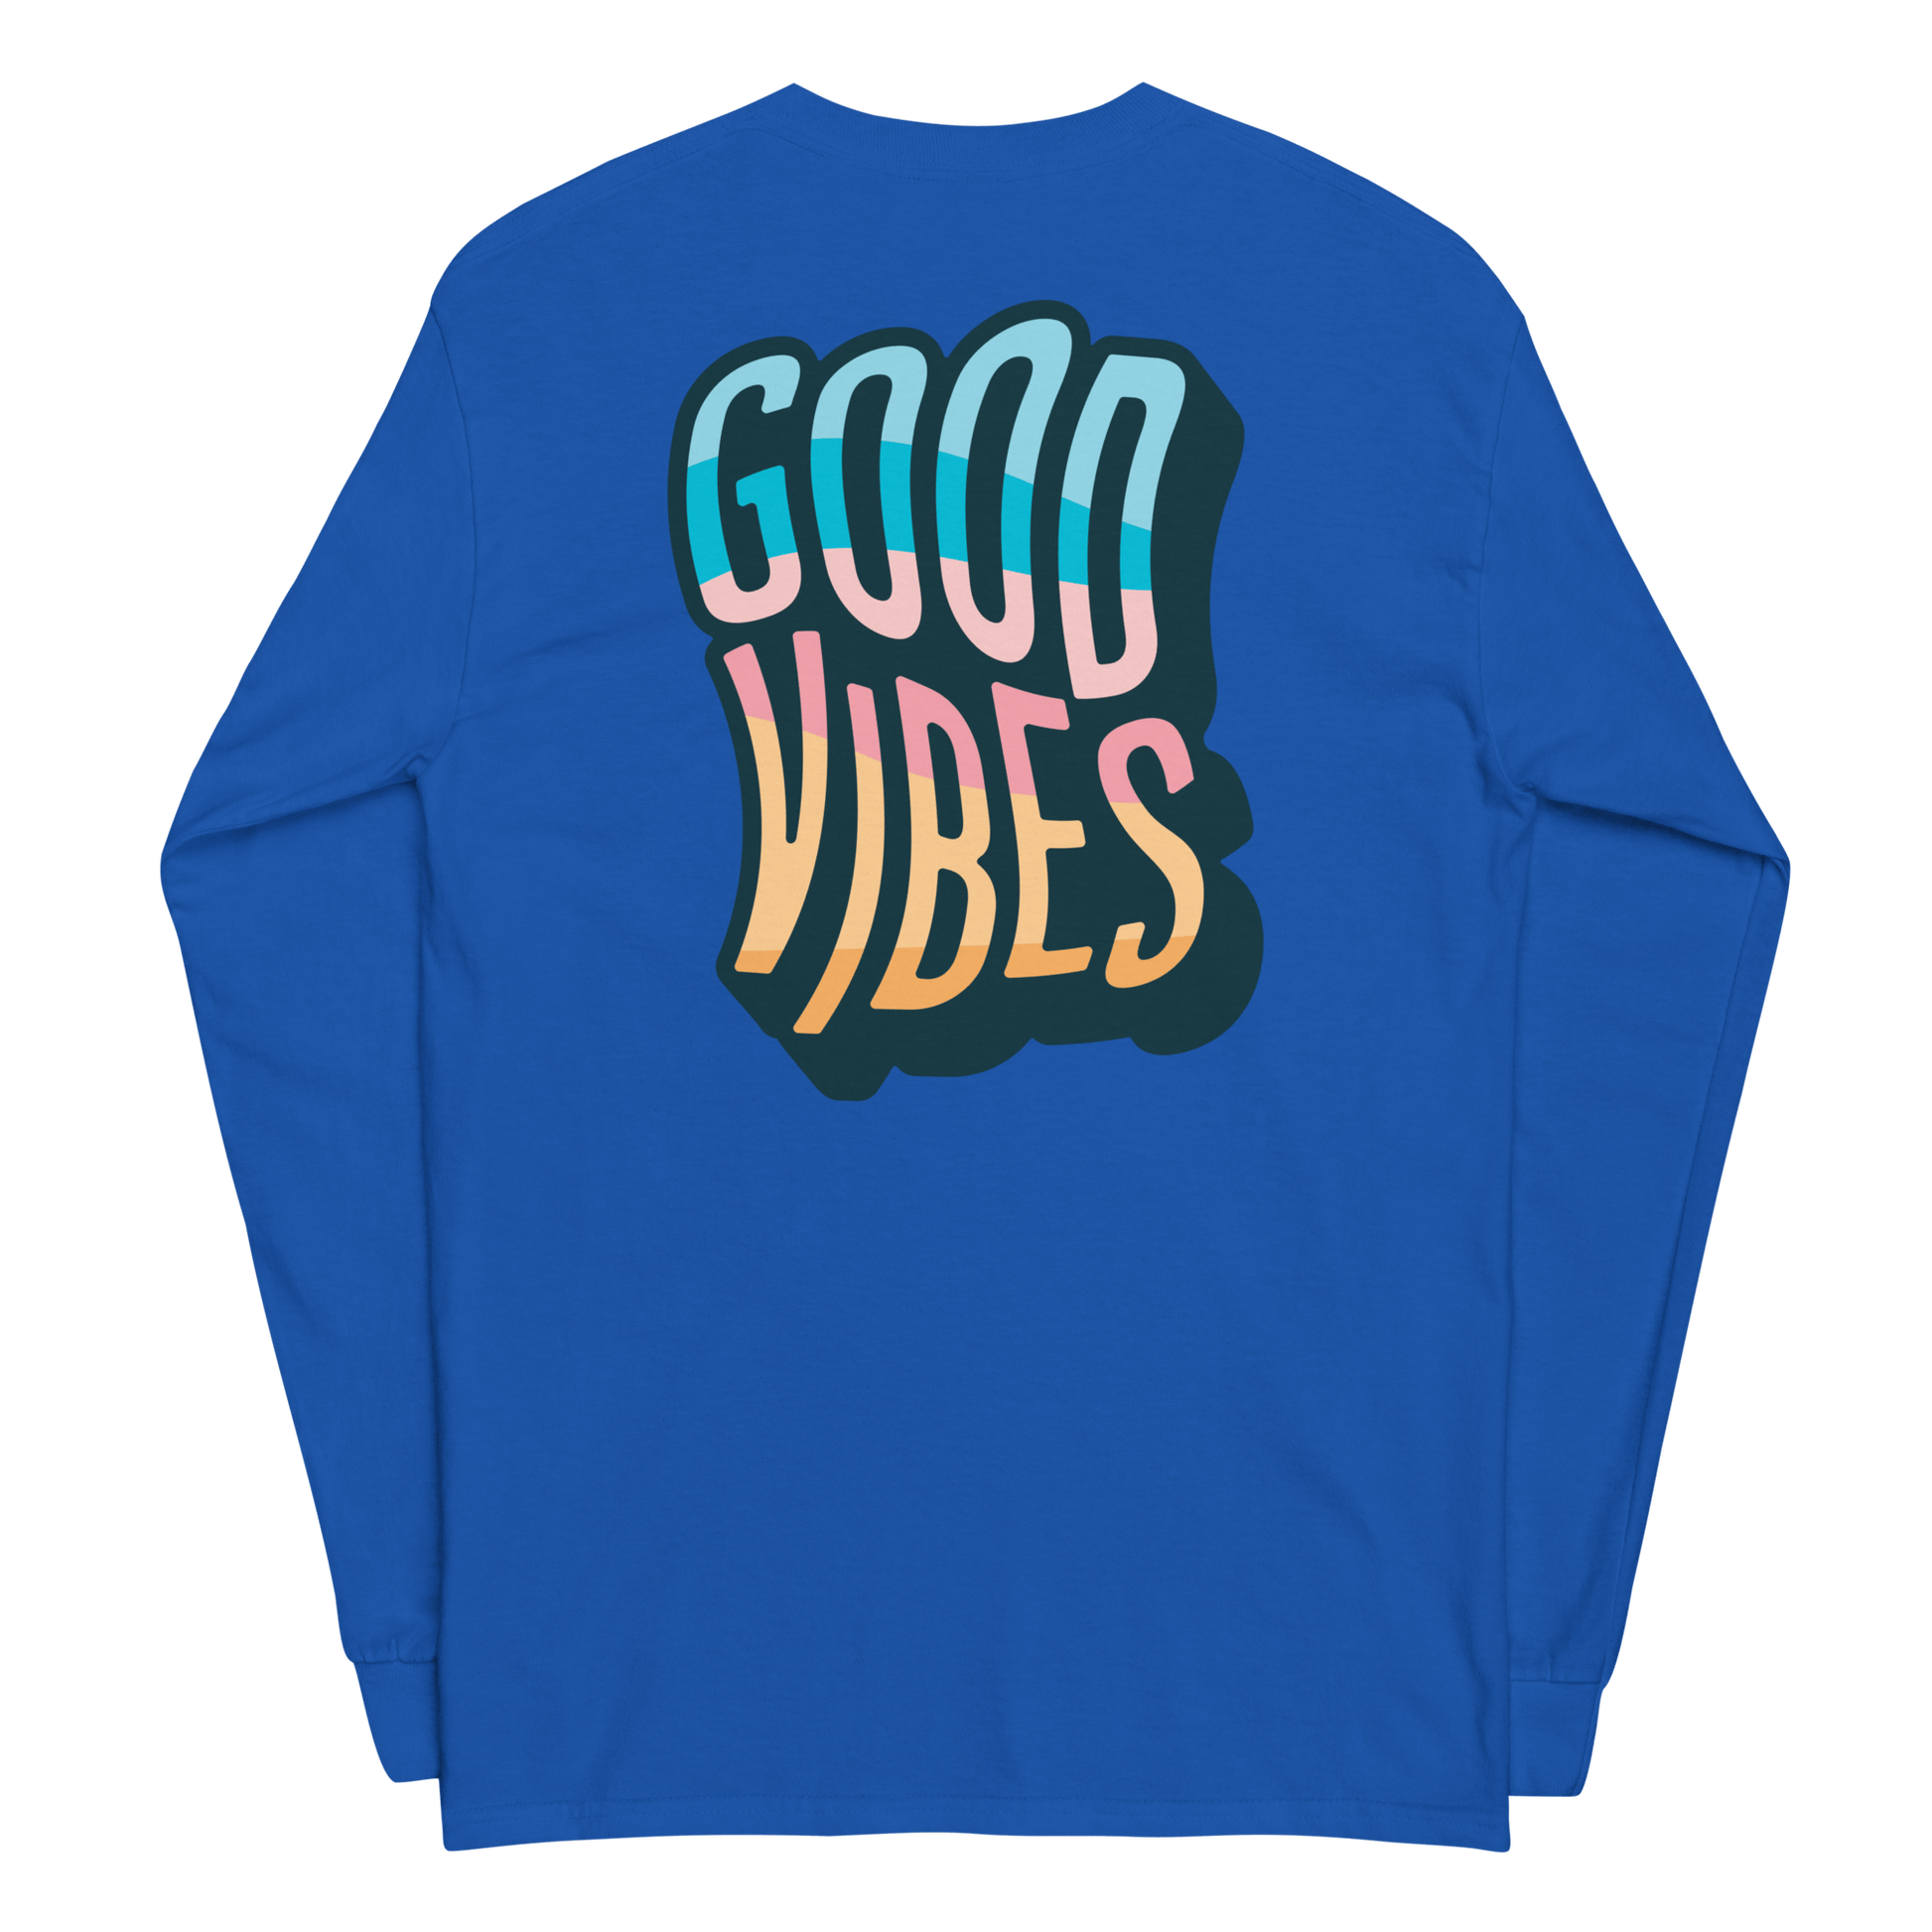 Good Vibes v1 - $ecure1